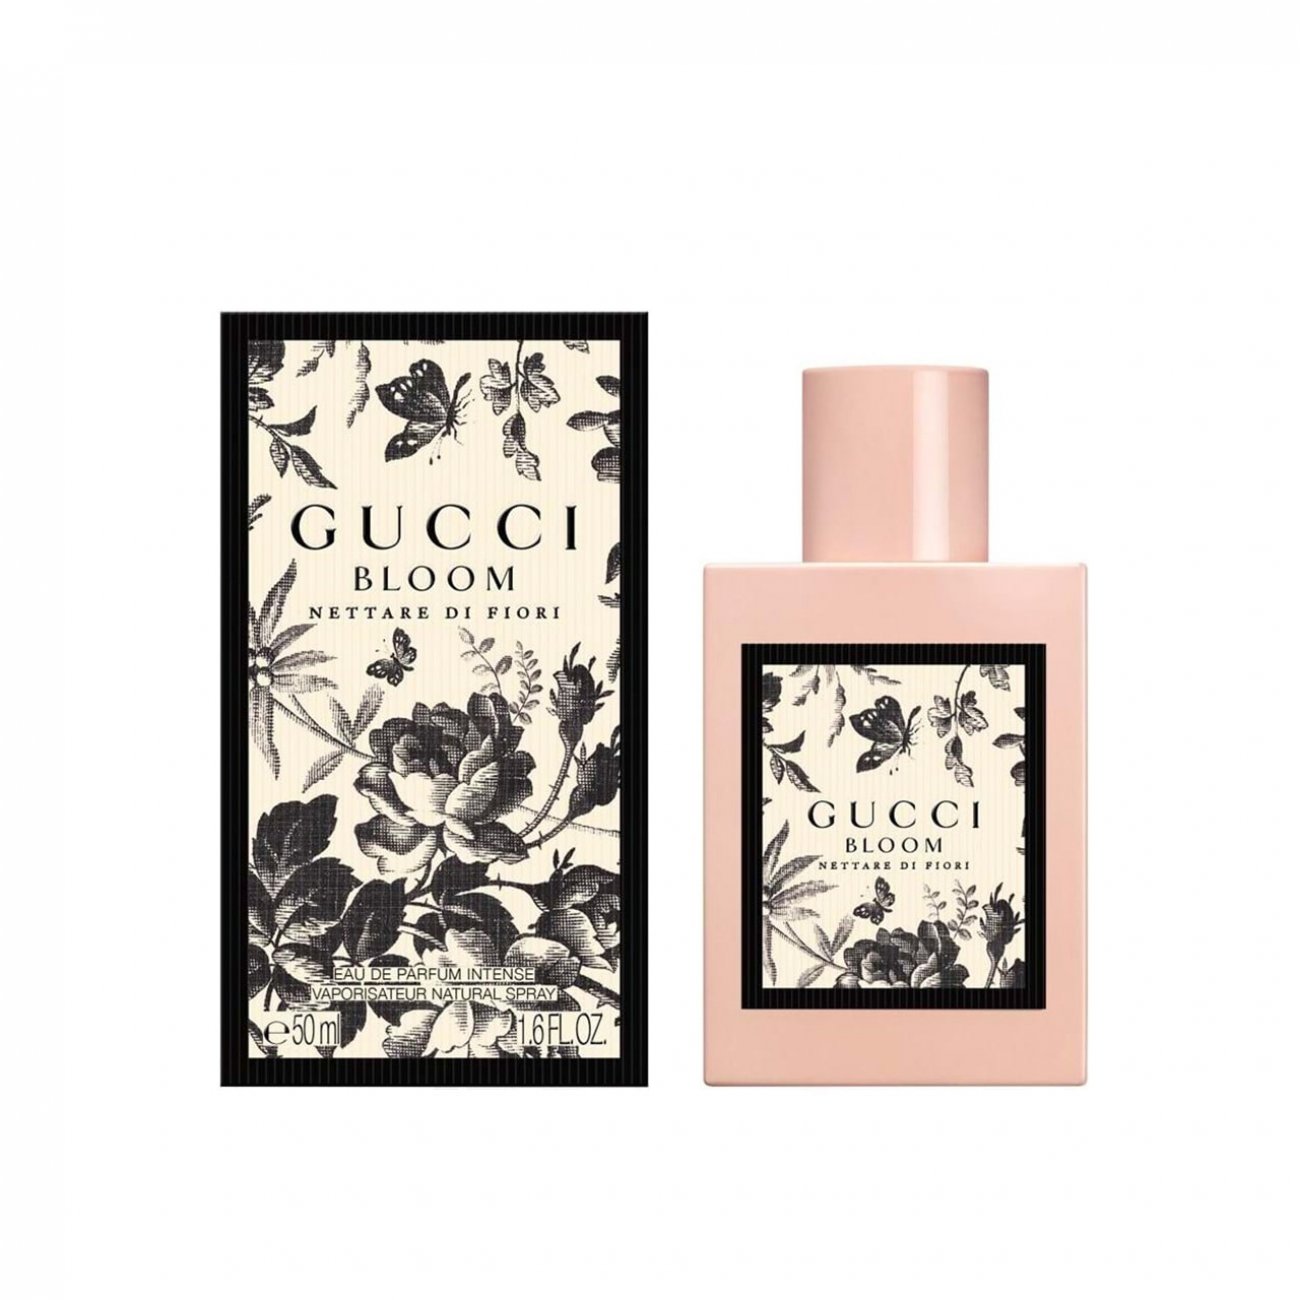 Buy Gucci Bloom Nettare Di Fiori Eau de Parfum Intense 30ml · Canada